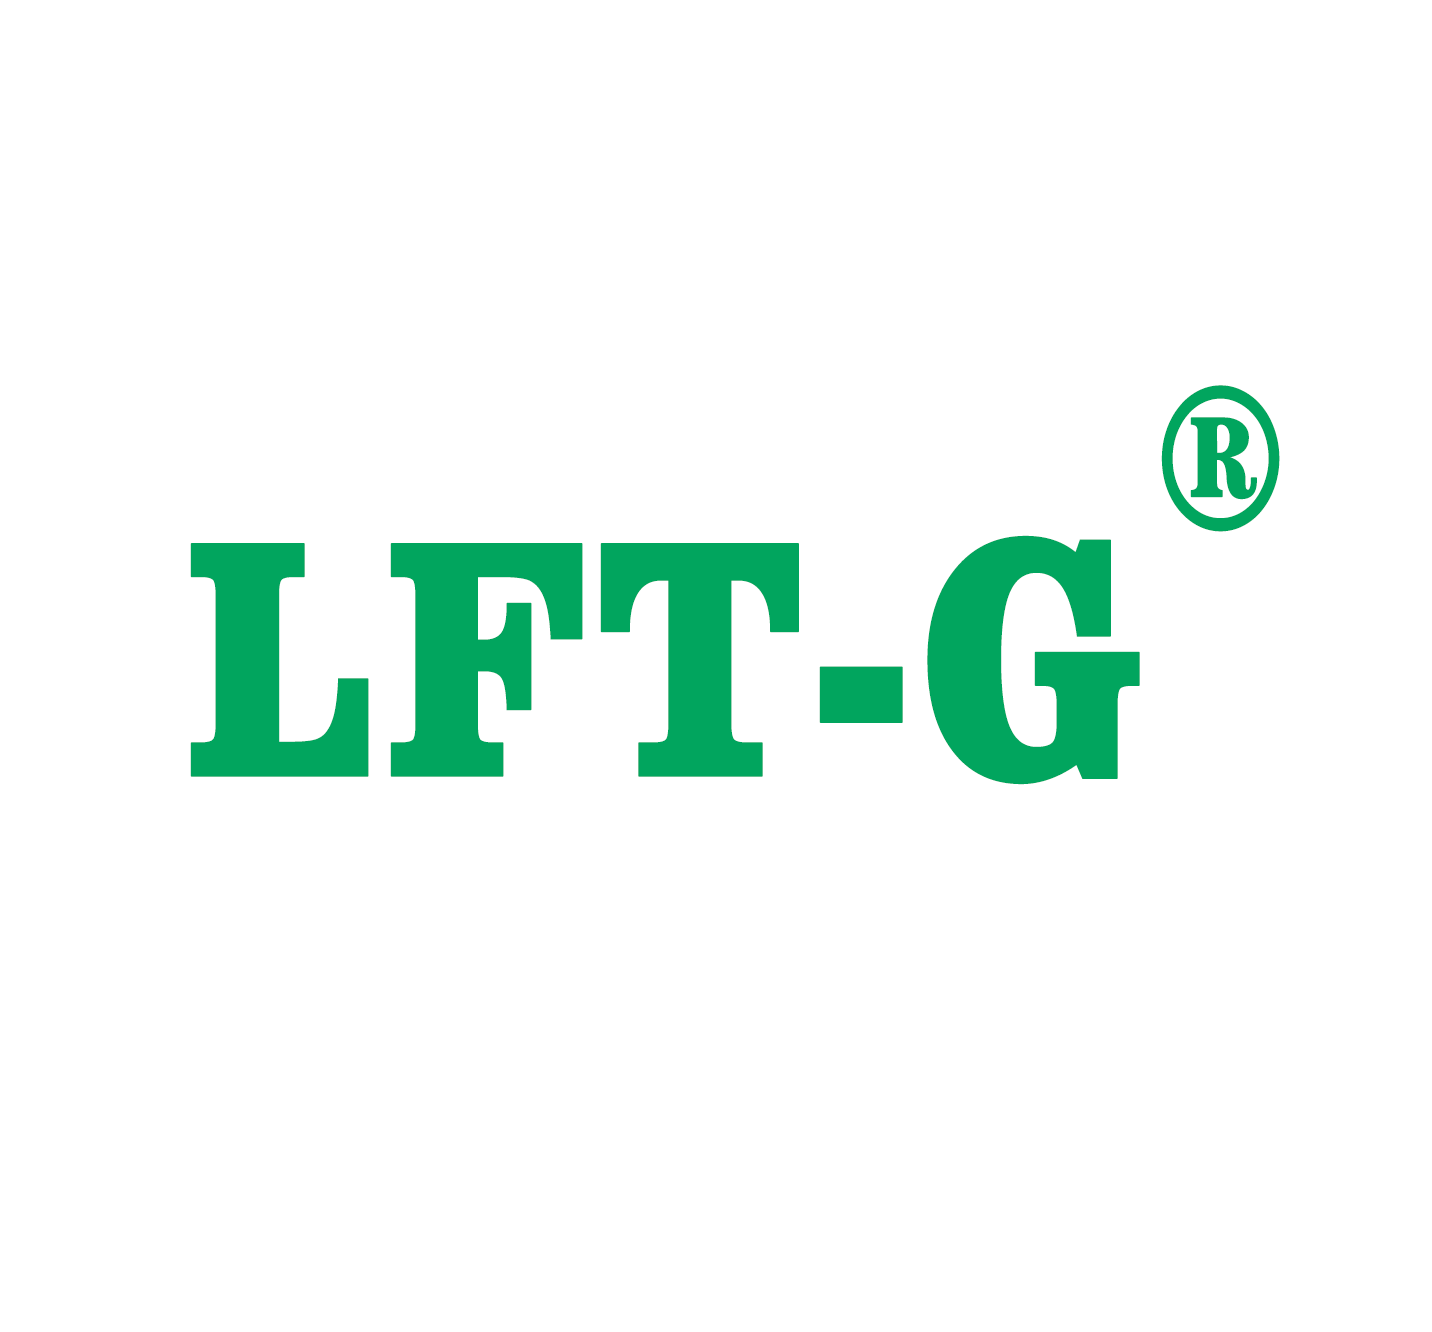  LFT-G comenzar un nuevo viaje en el nuevo año